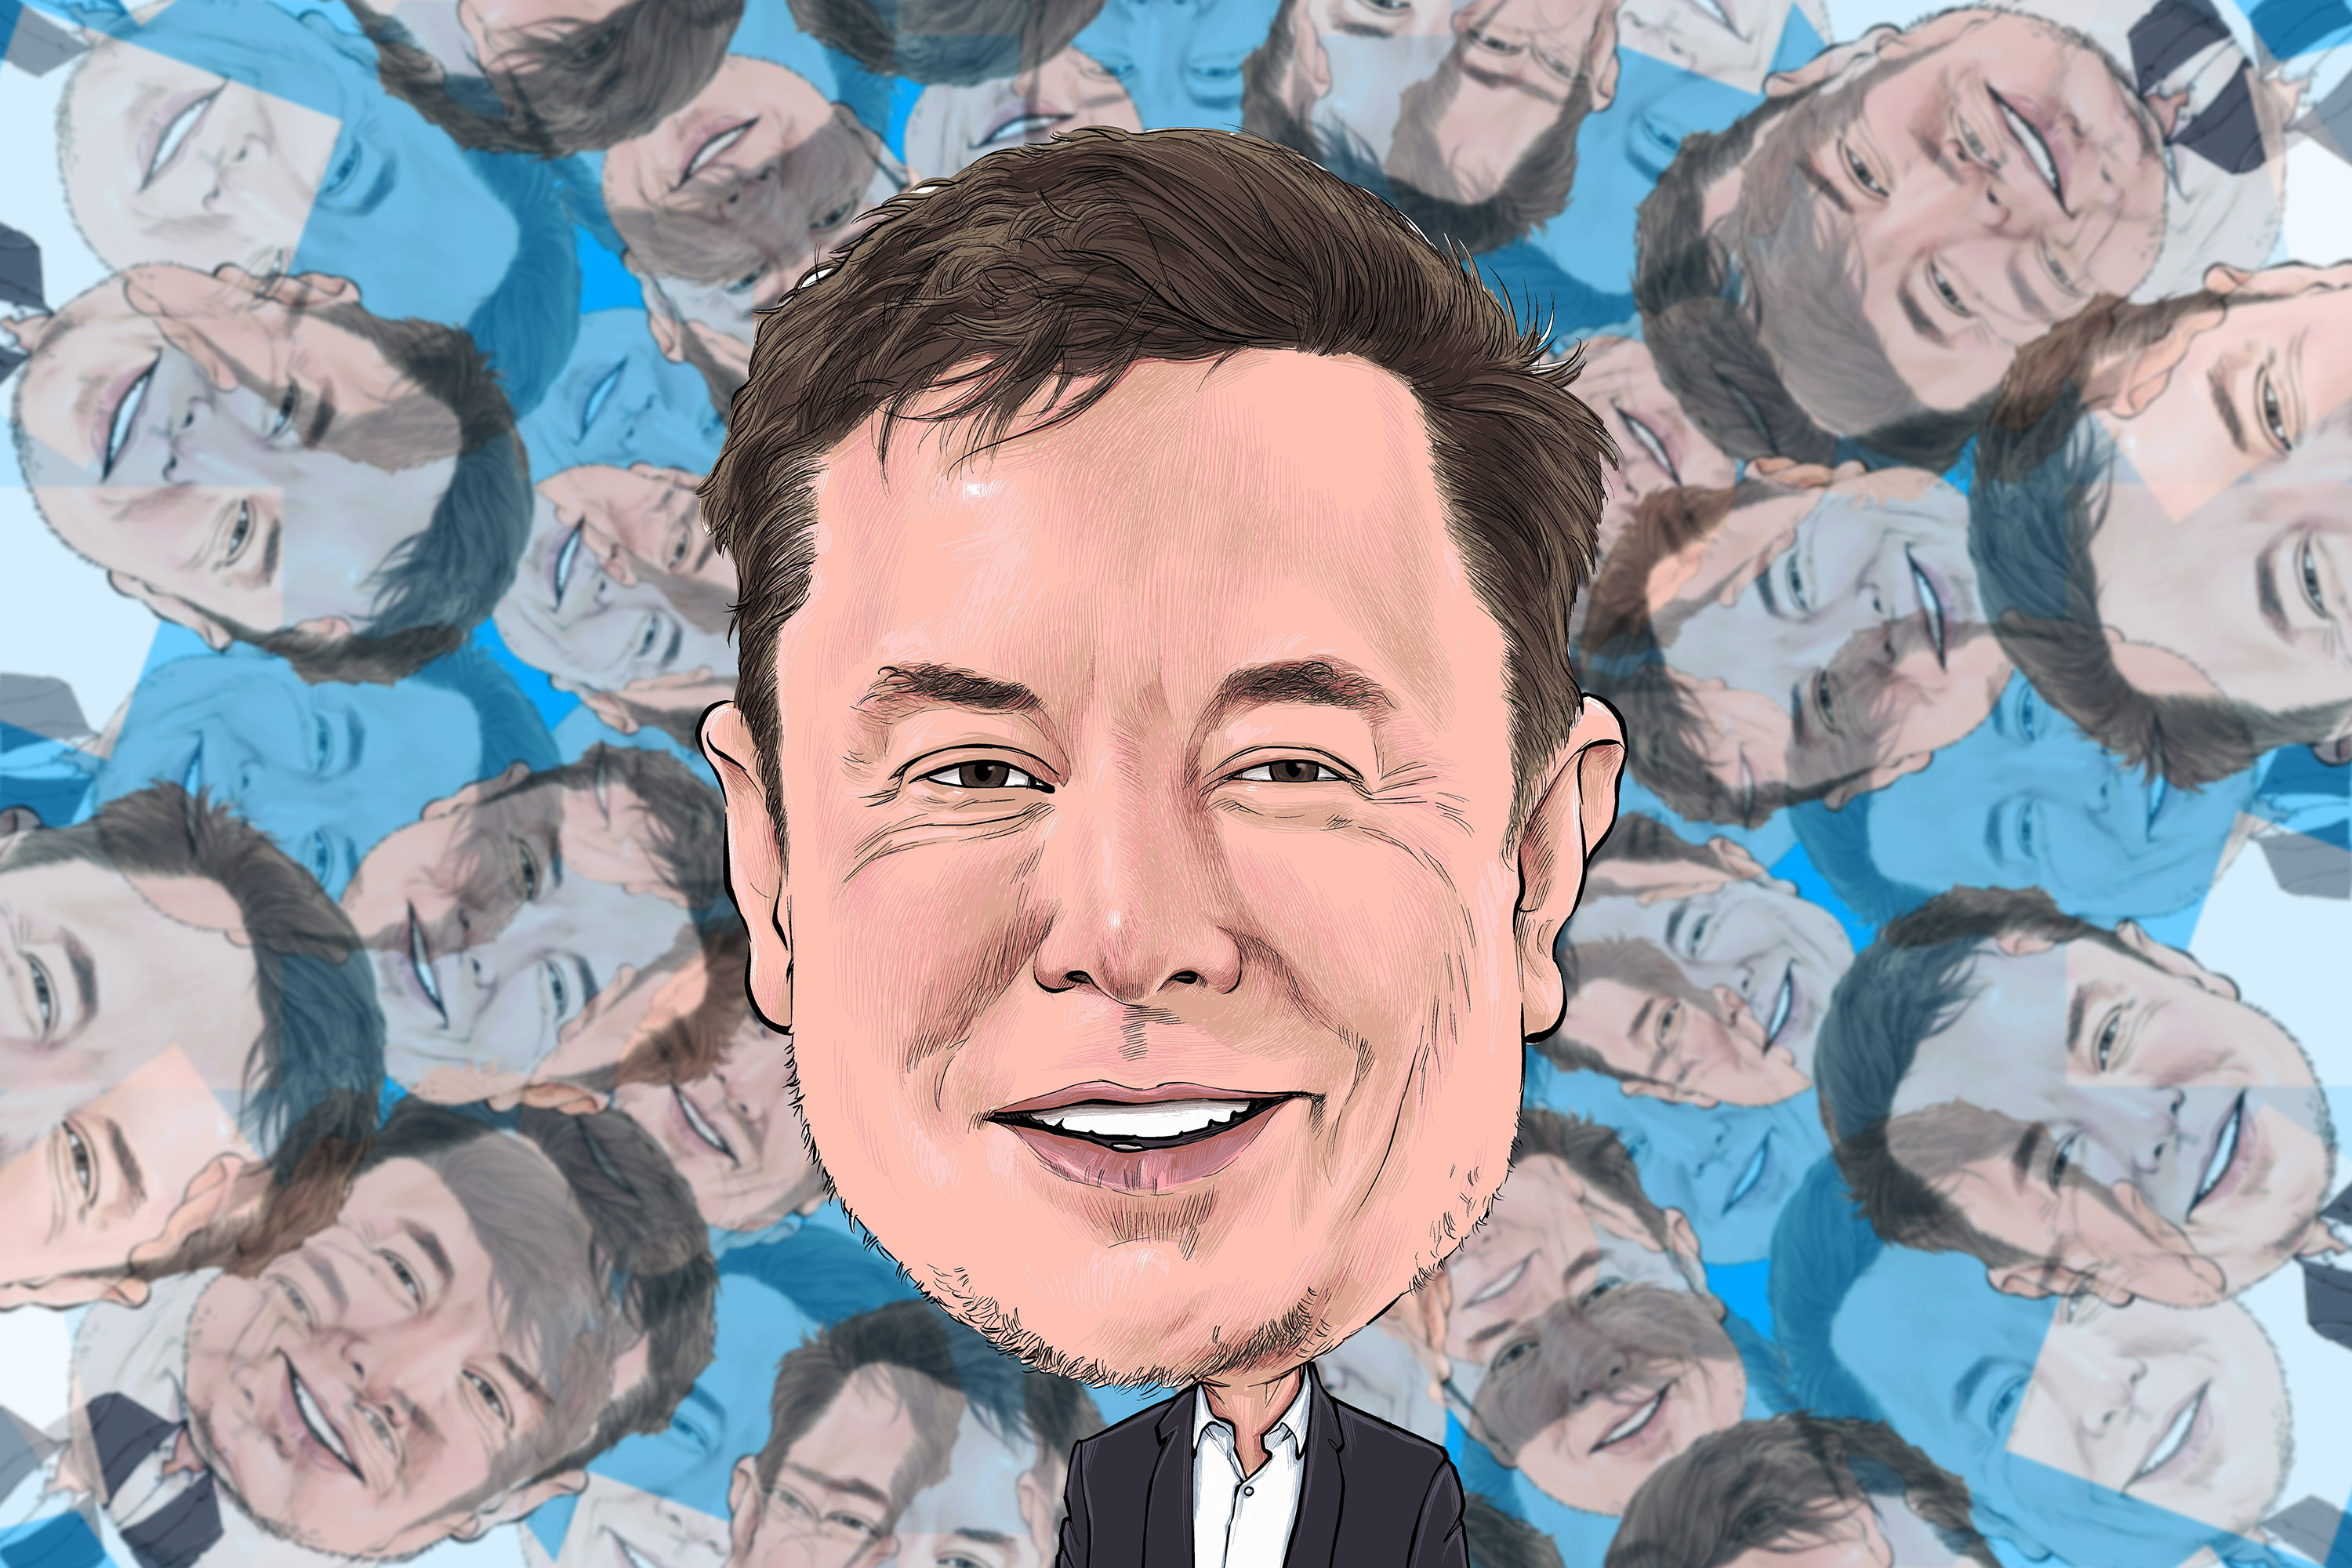 Twitter : les employés restants vont gagner le gros lot... enfin, selon Musk